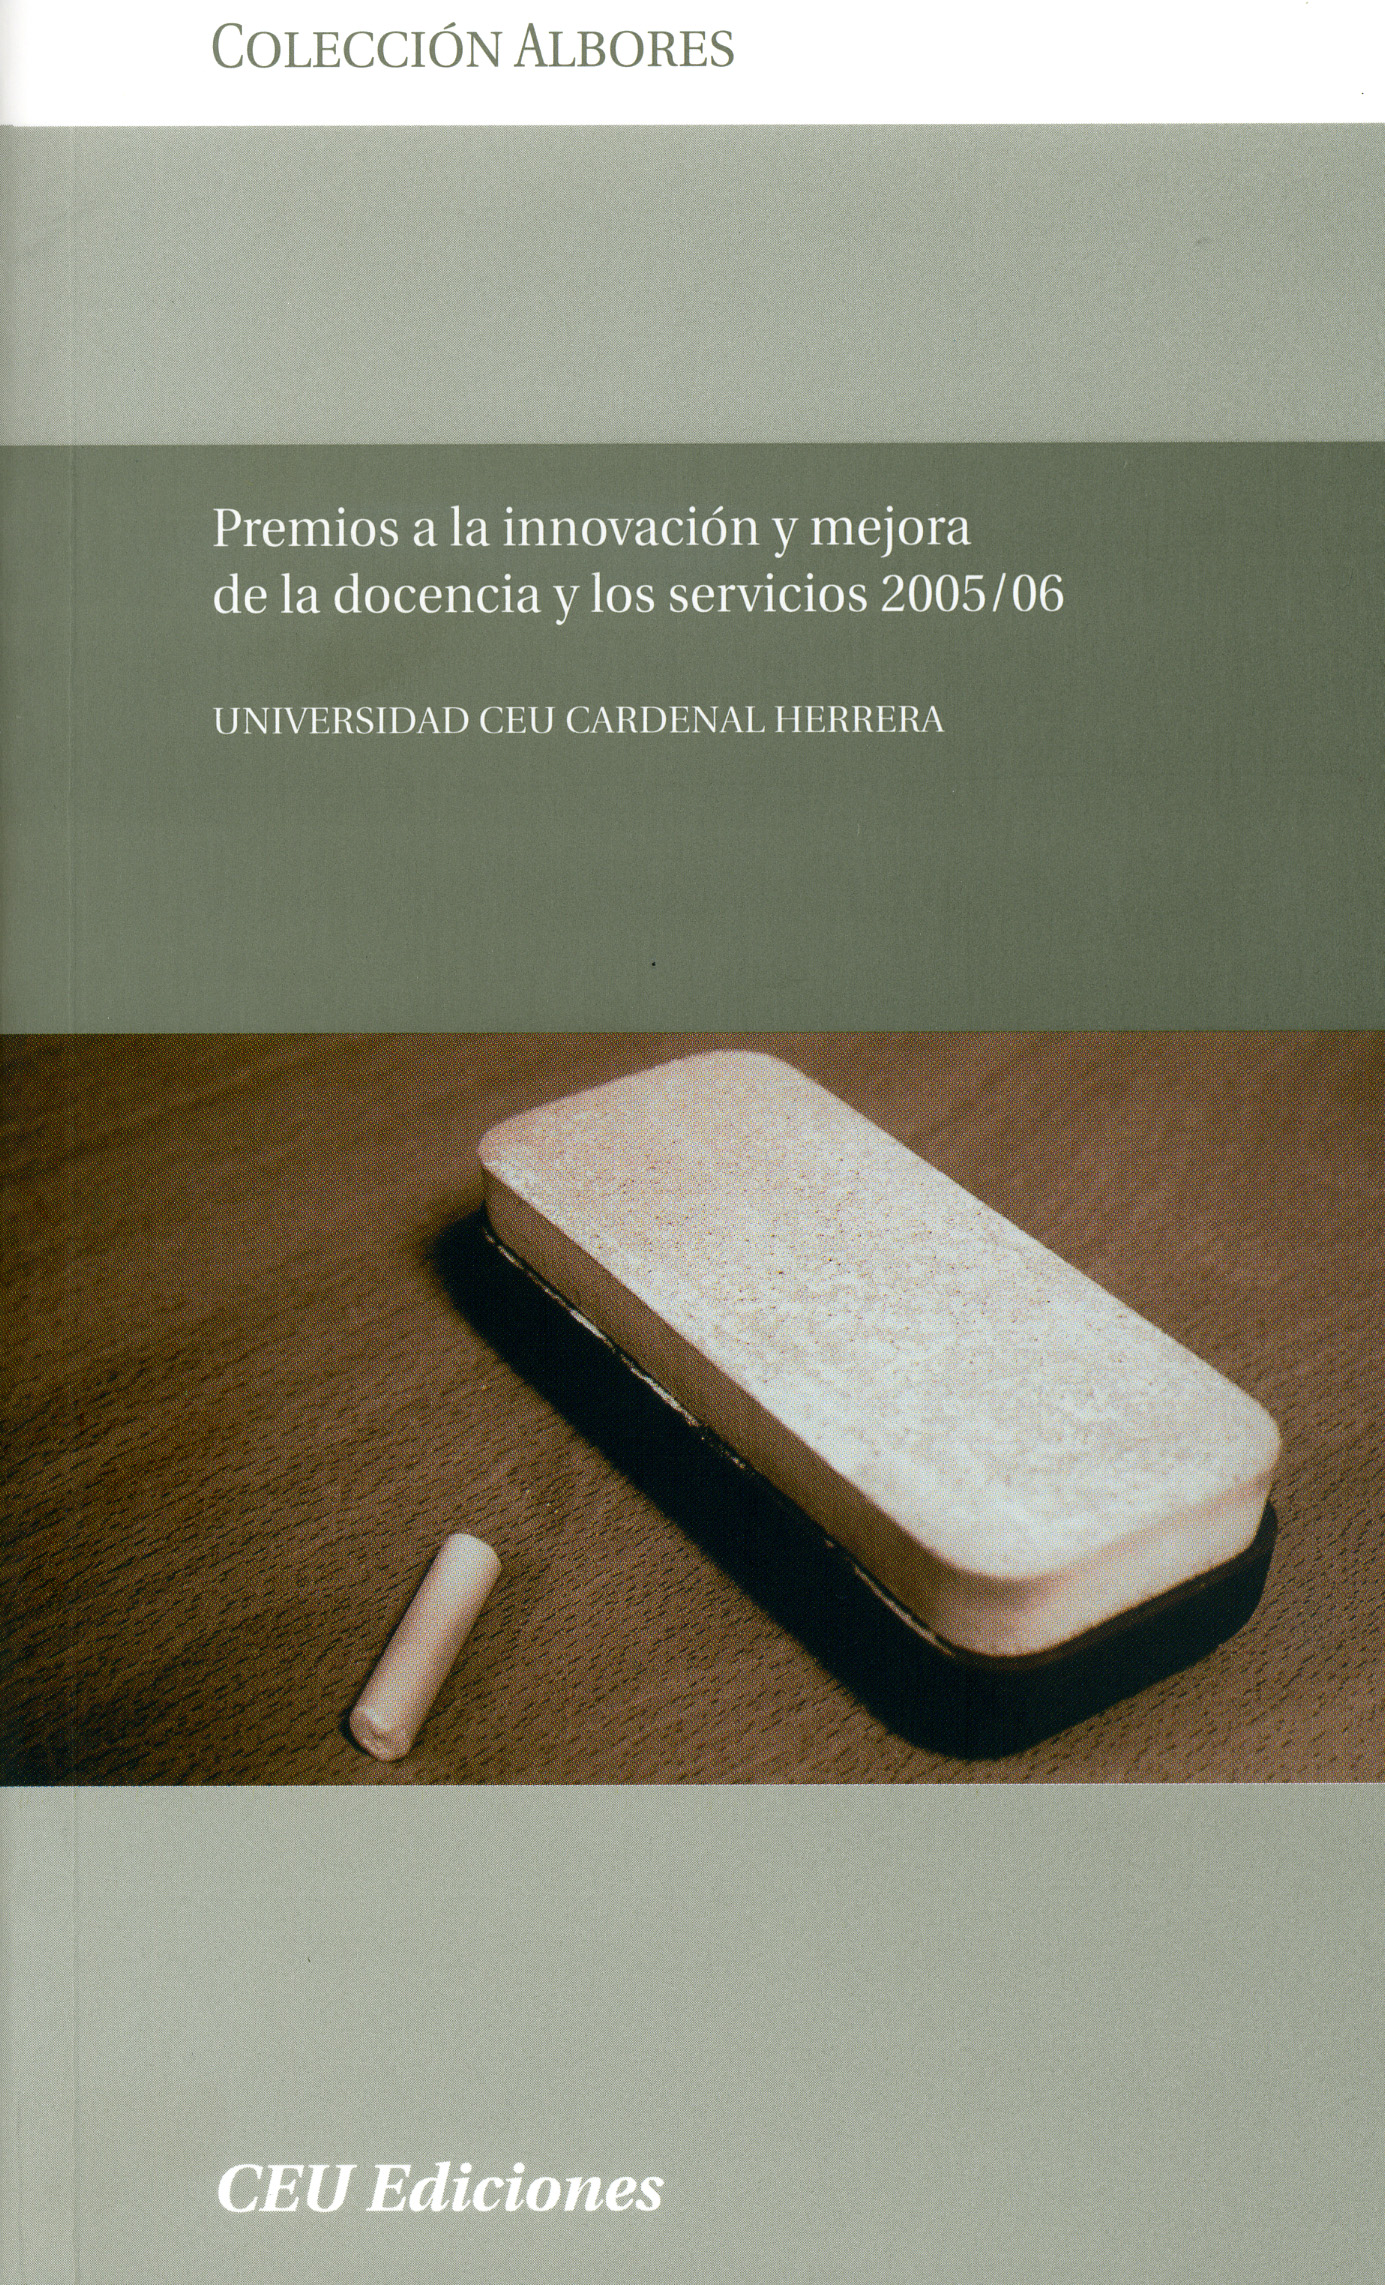 Portada del libro, editado por CEU Ediciones.